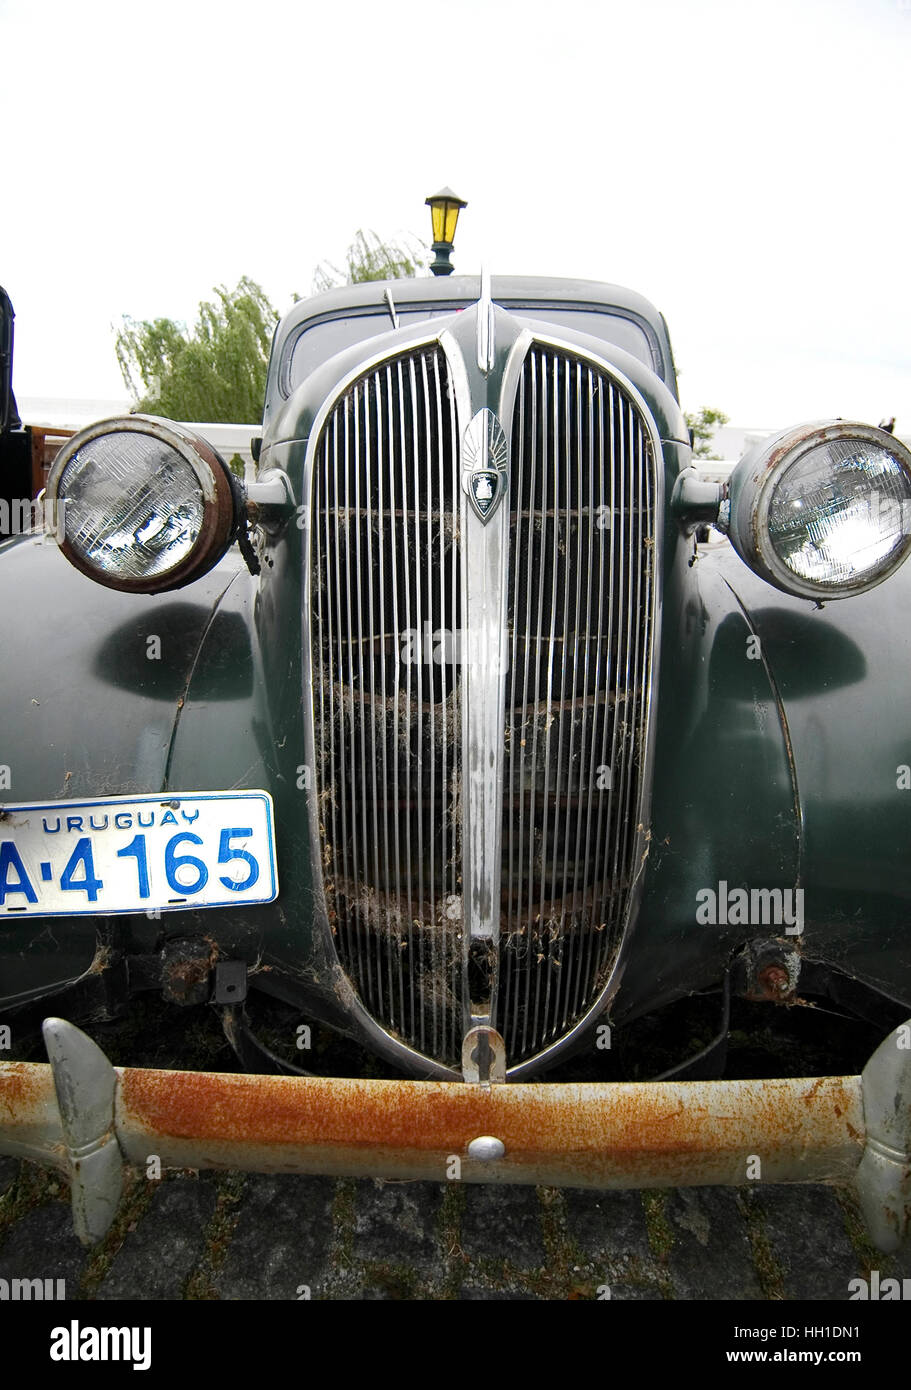 Vintage car in Colonia, Uruguay Stock Photo